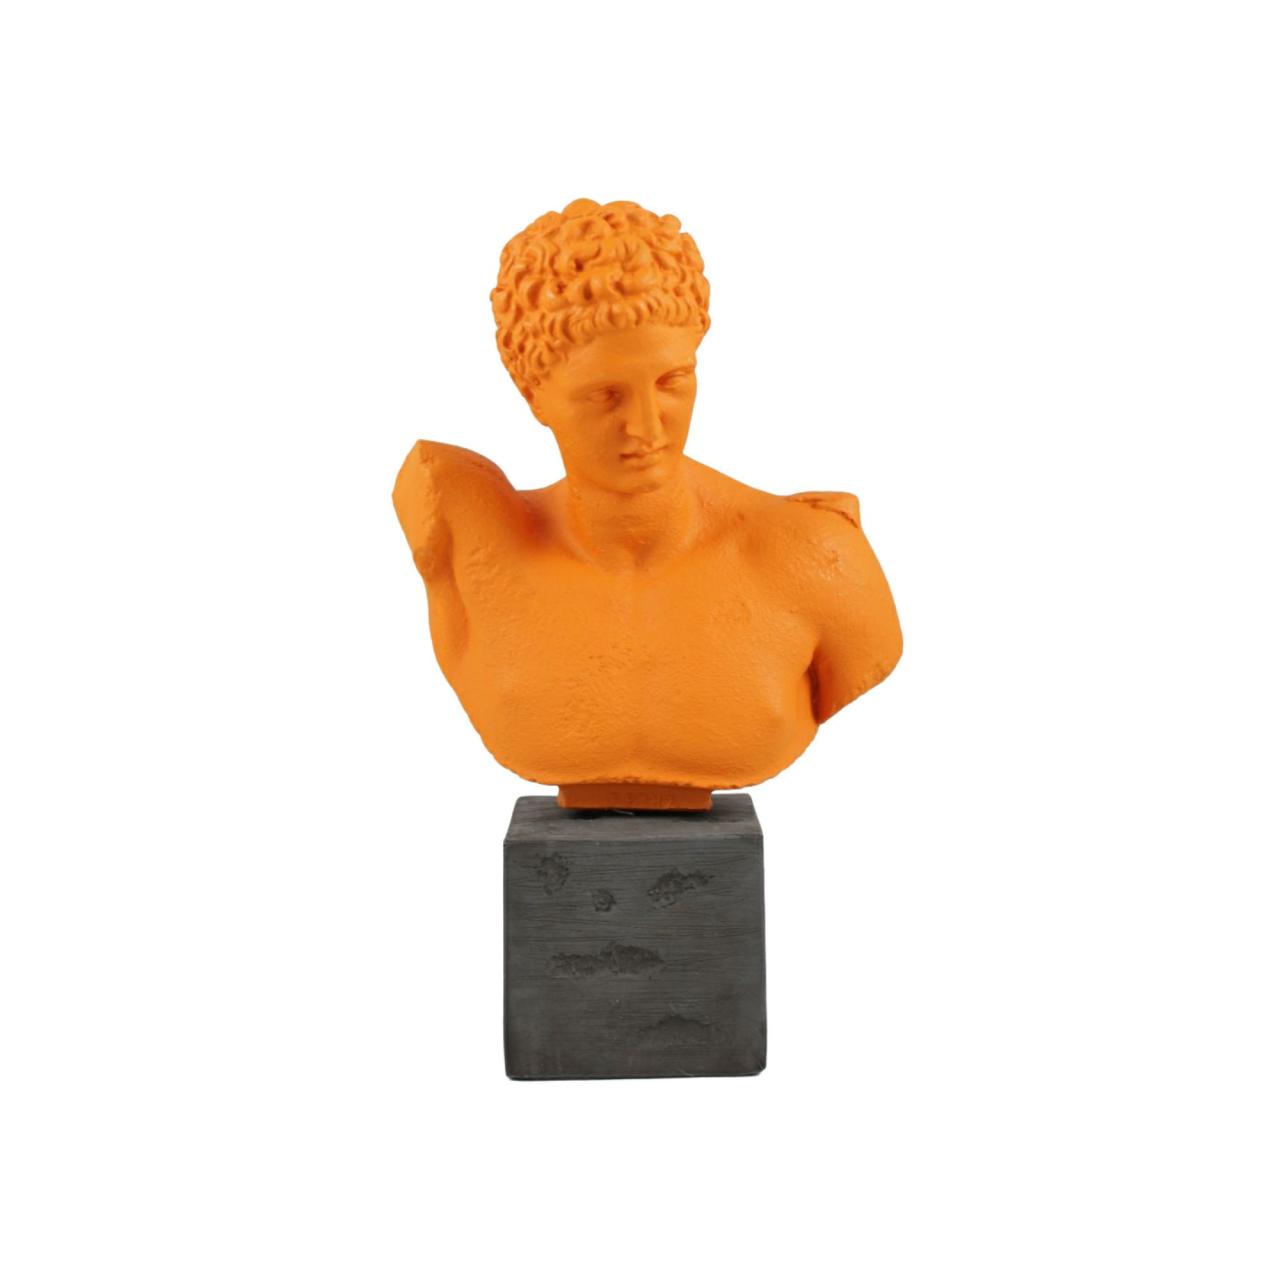 Hermes God Bust Head Statue Pop Art